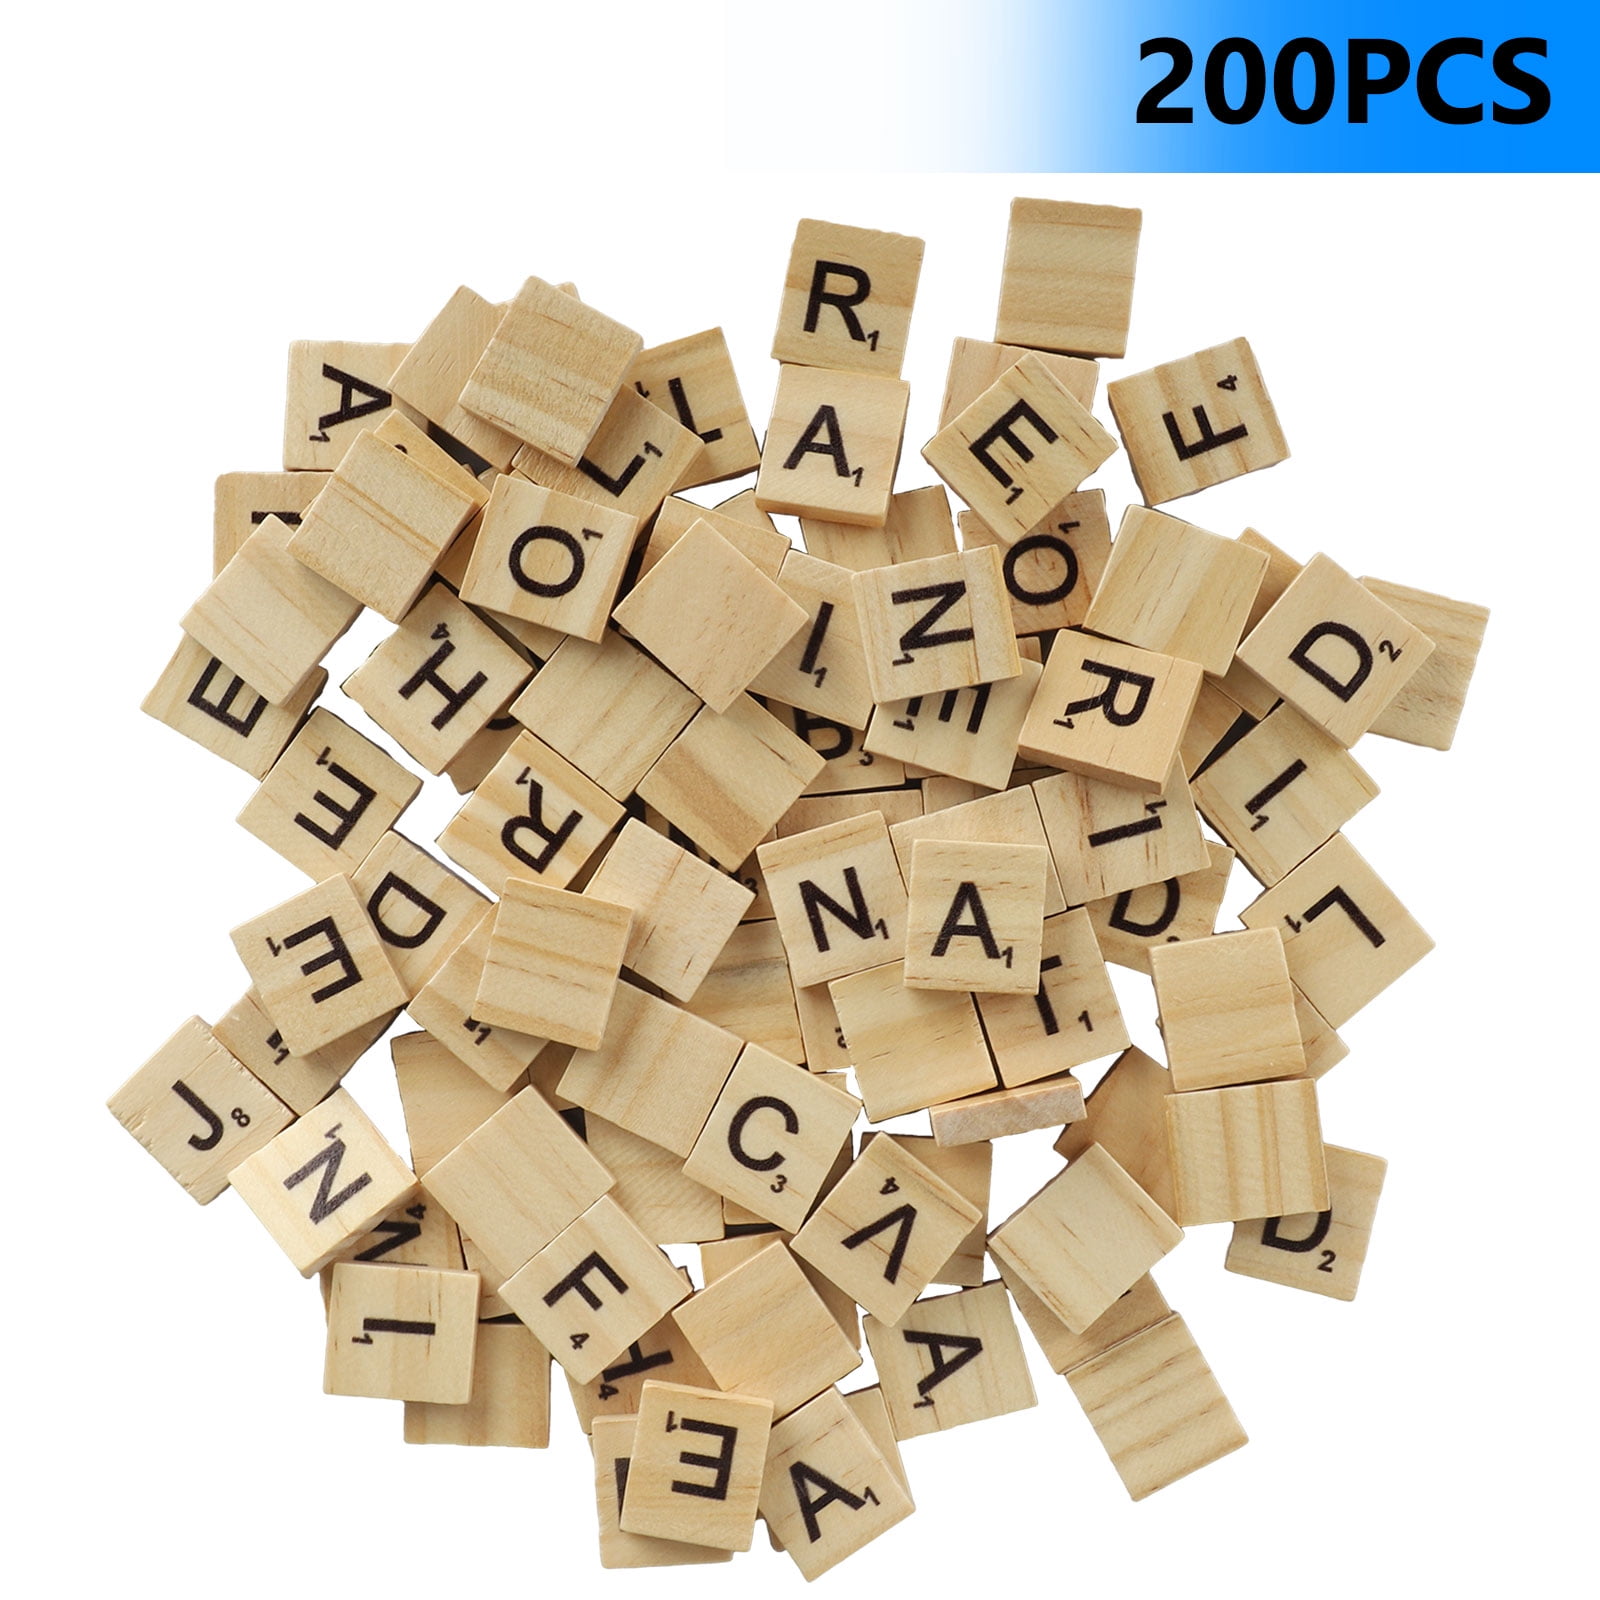 200PCS Wood Letter Tiles/ Wooden Scrabble Tiles A-Z Capital Letters for Crafts Scrabble Tiles 